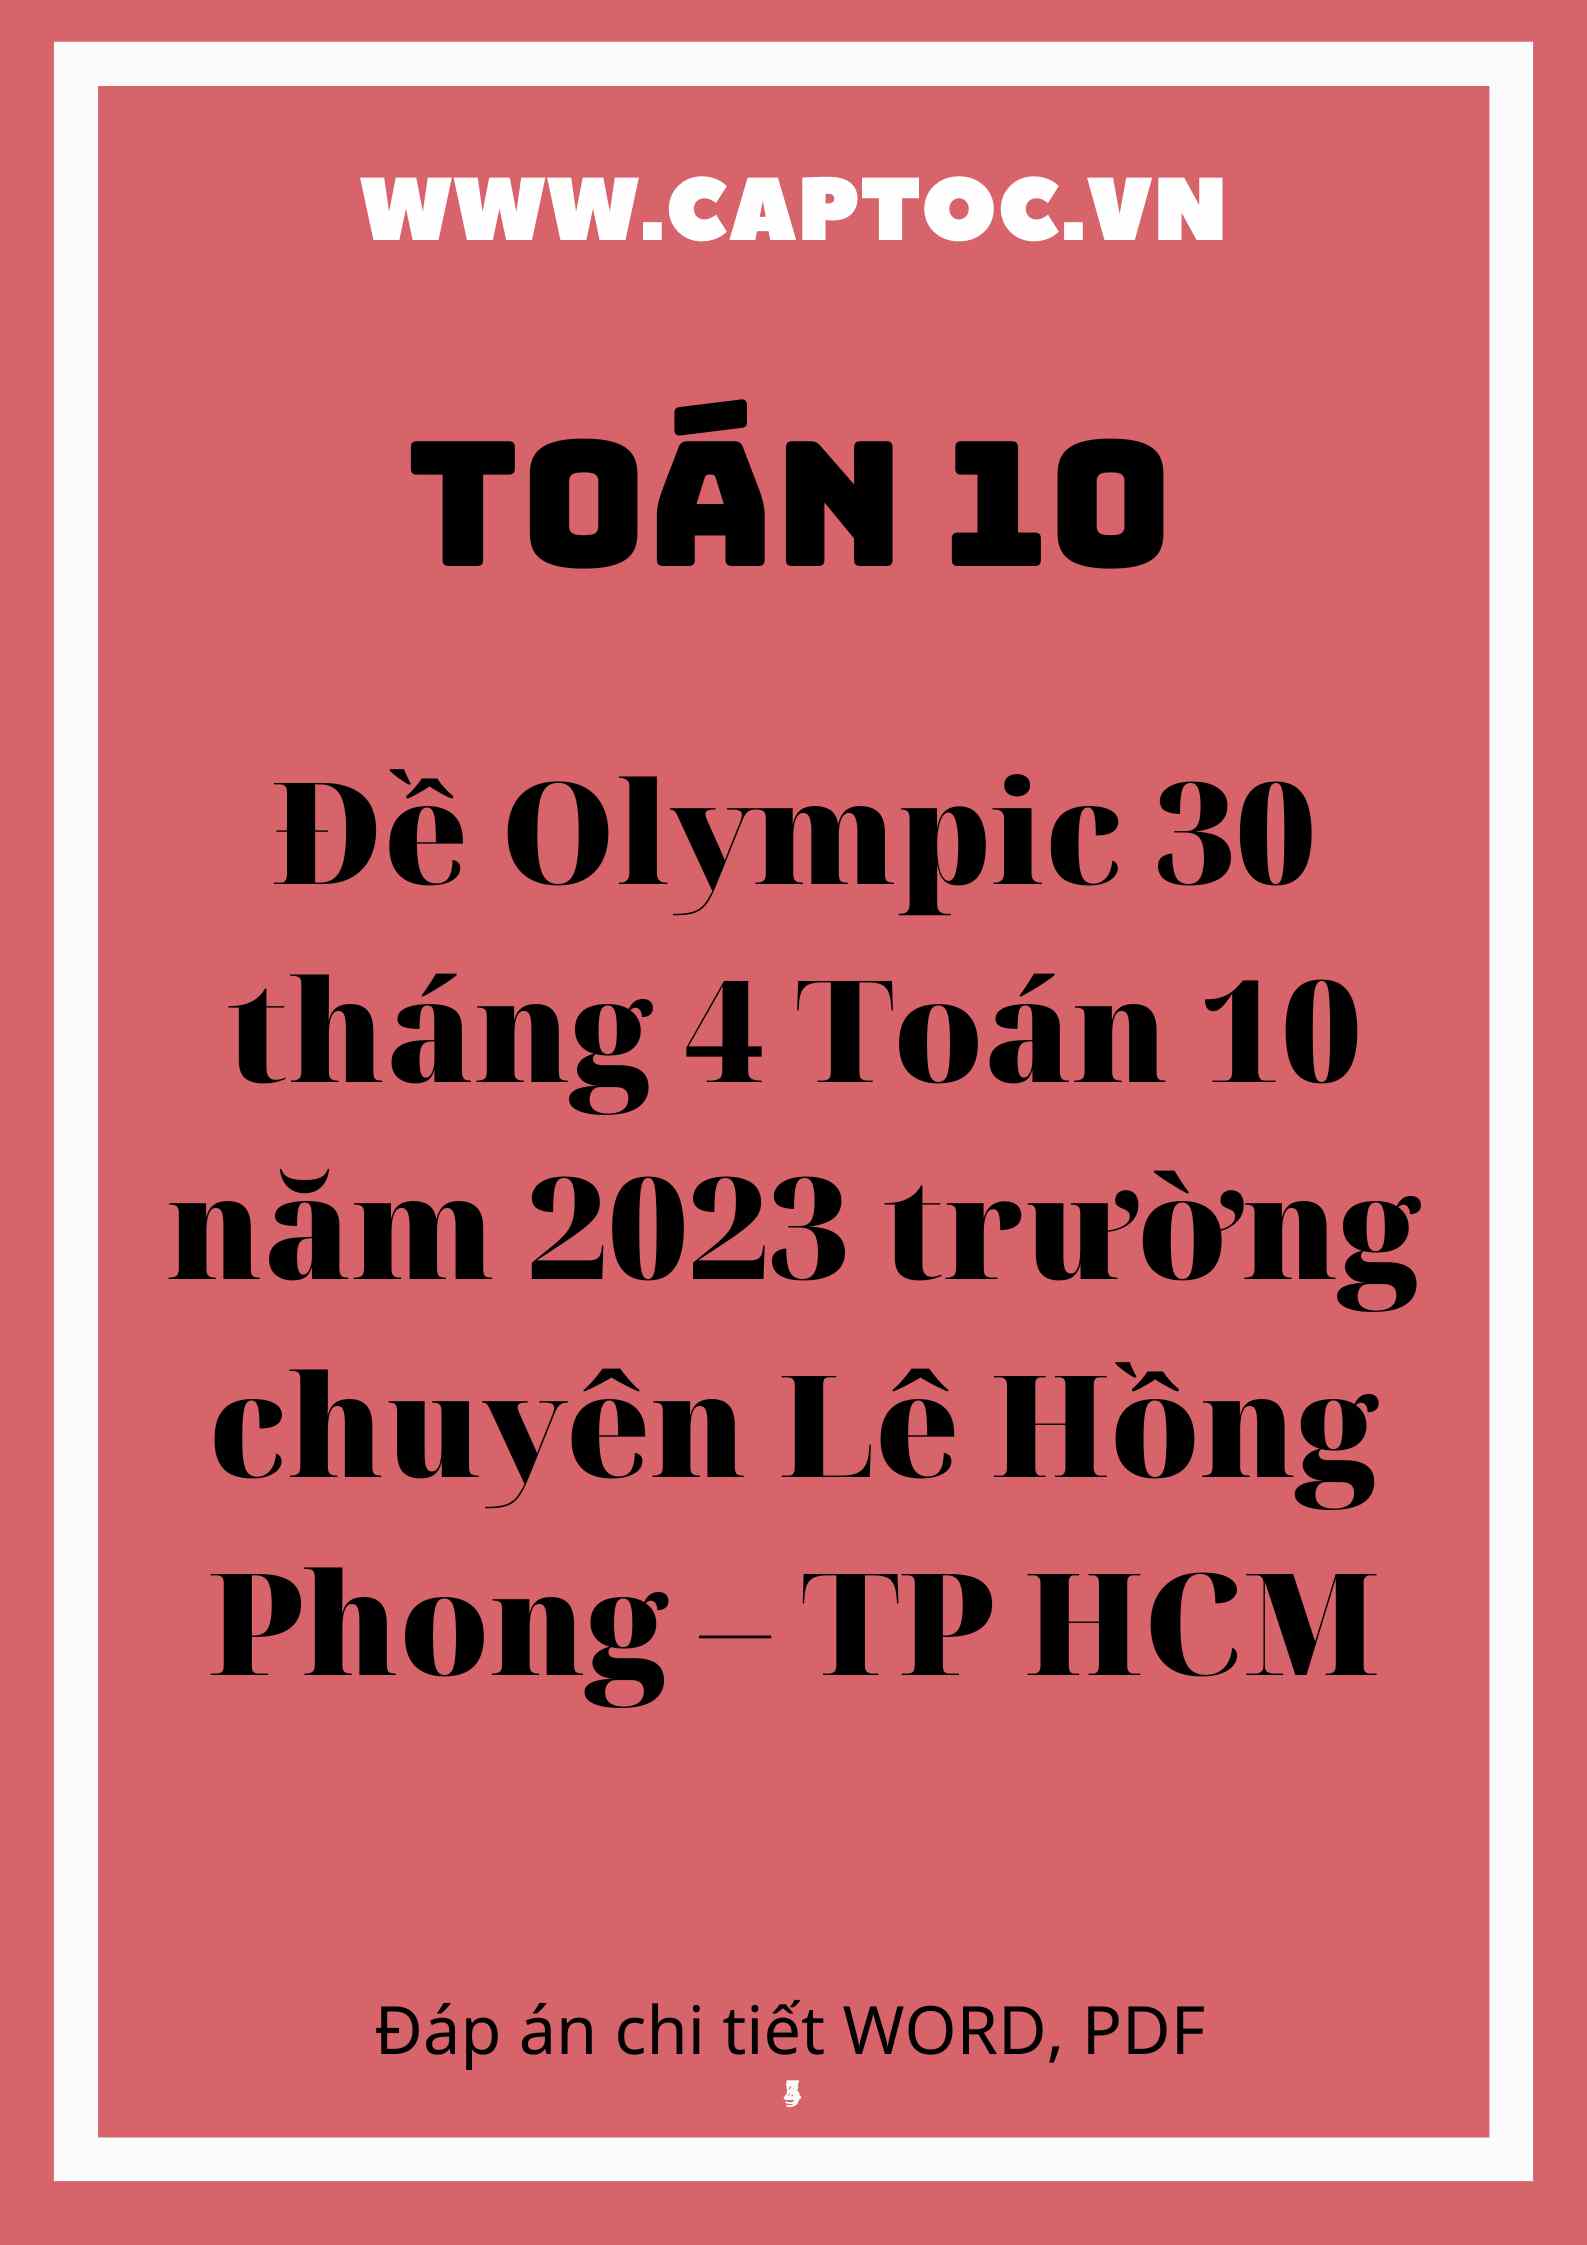 Đề Olympic 30 tháng 4 Toán 10 năm 2023 trường chuyên Lê Hồng Phong – TP HCM